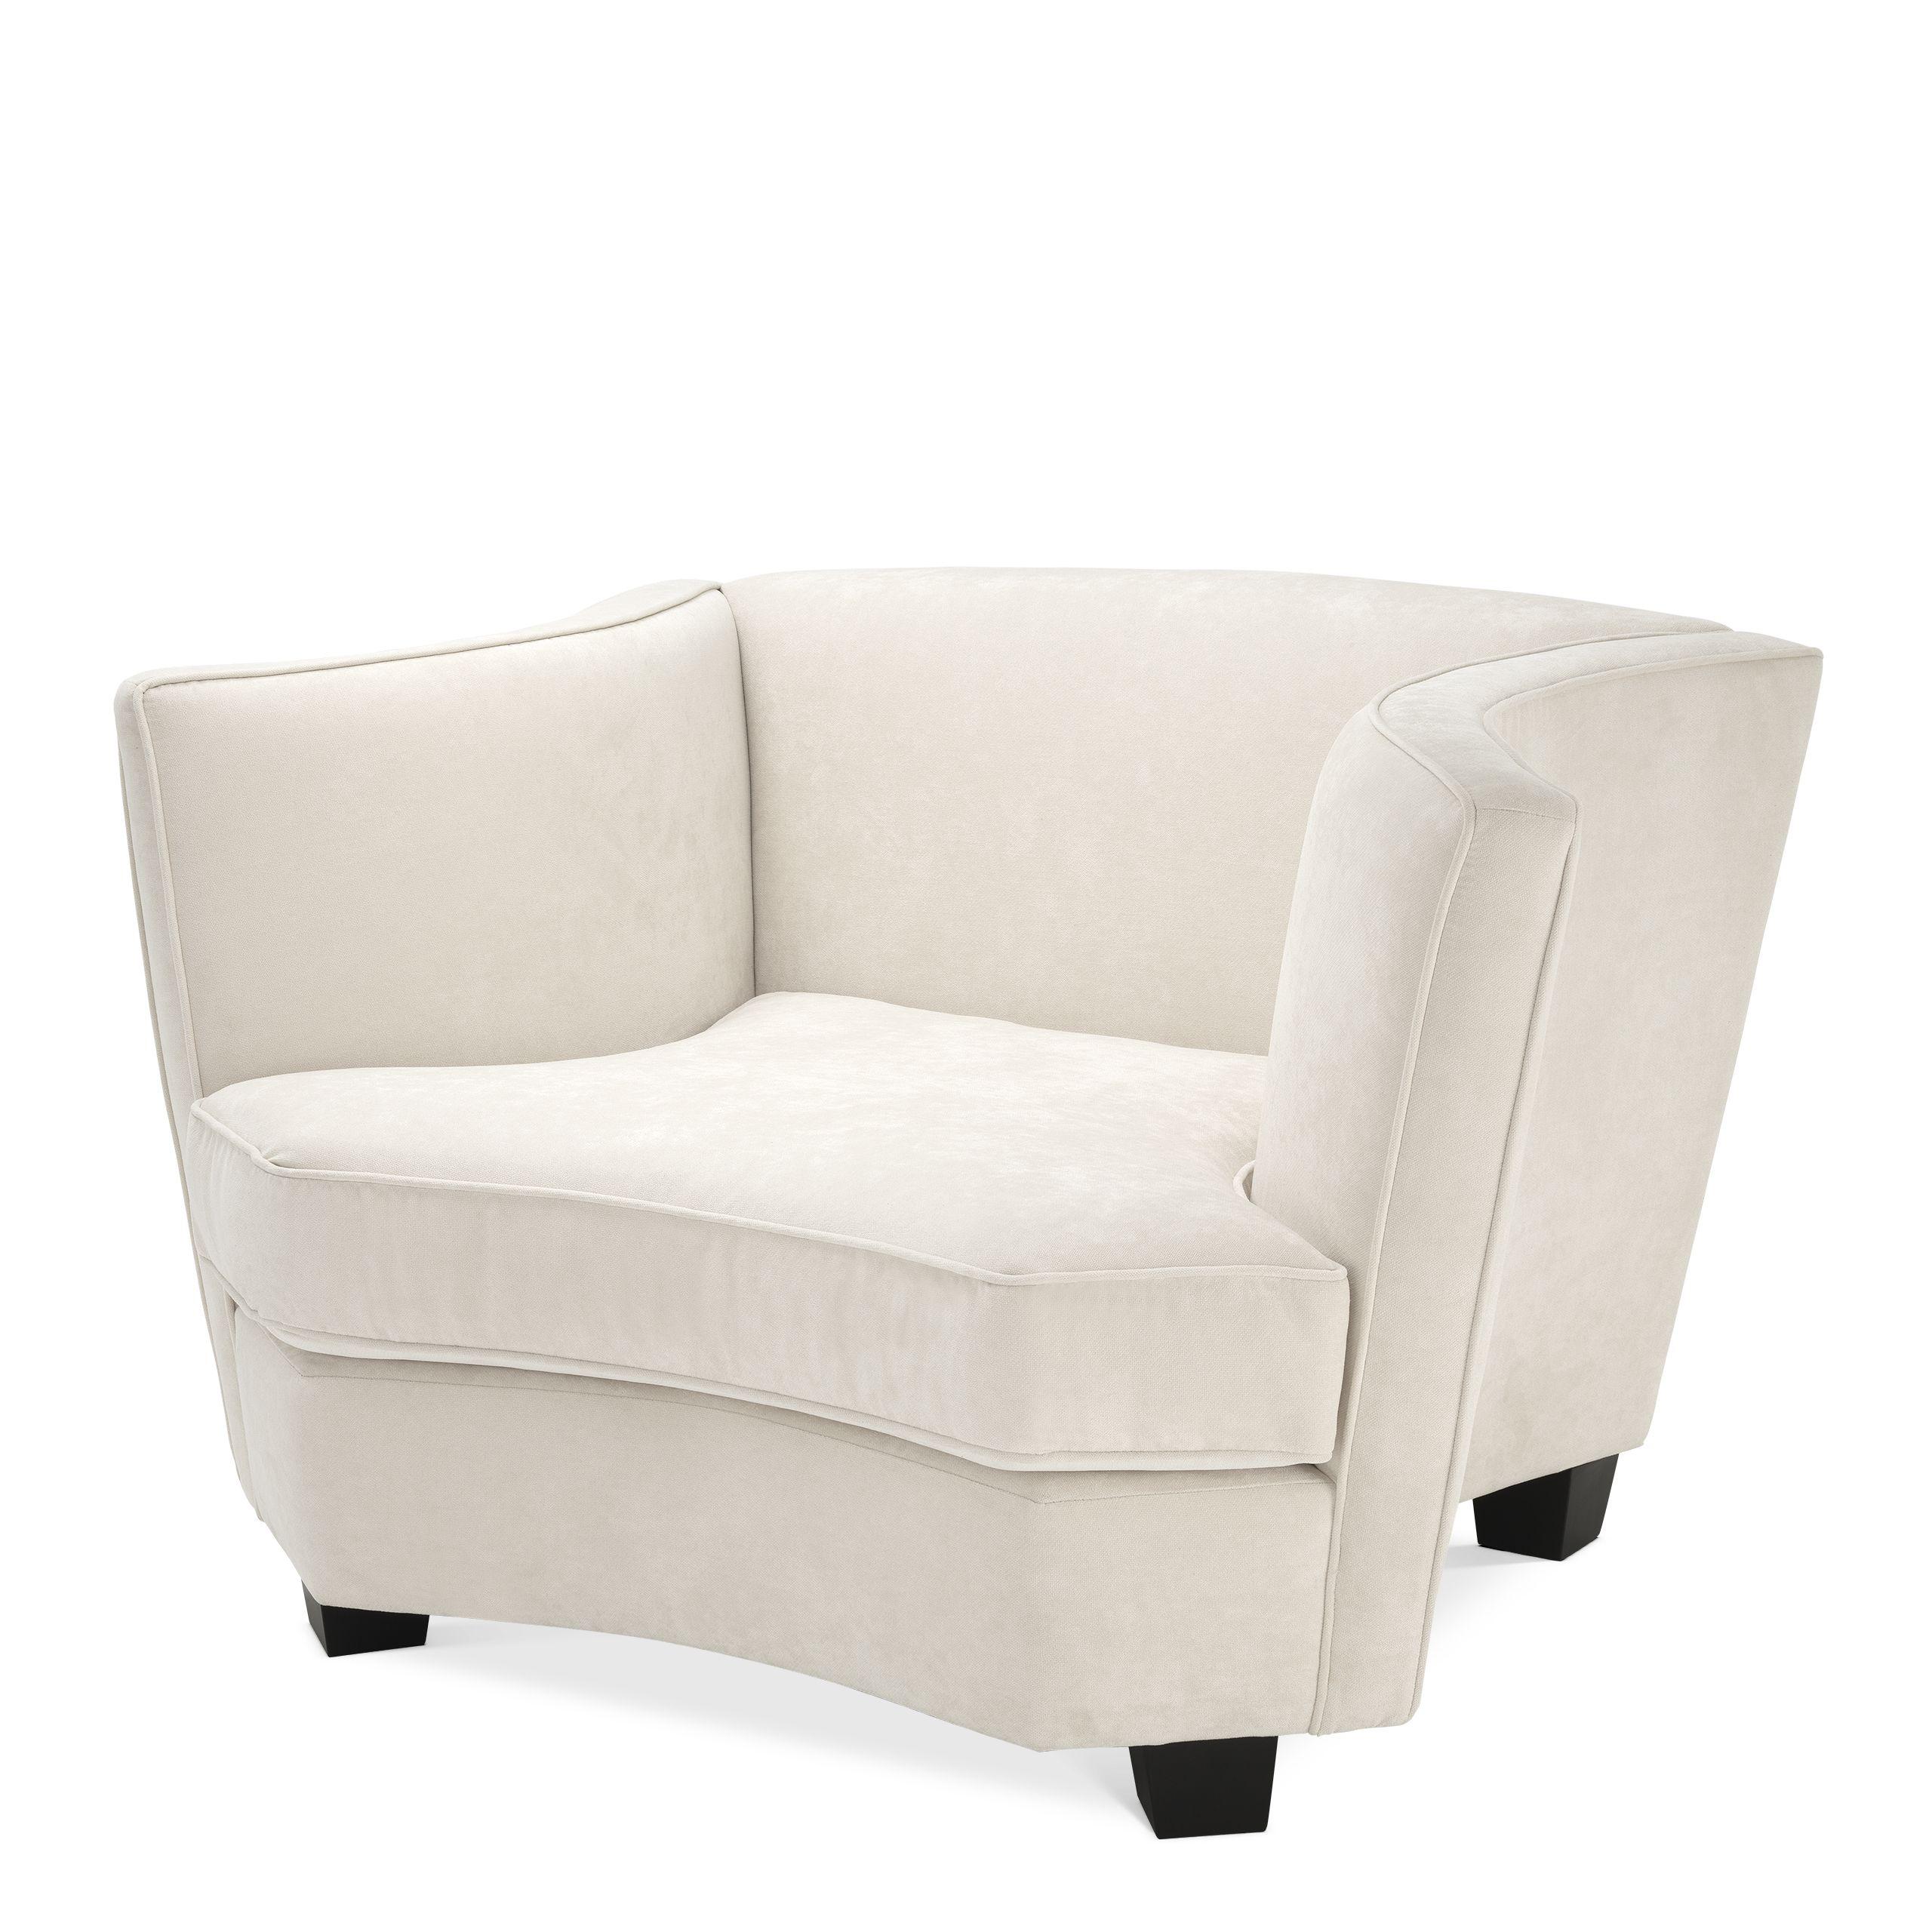 Купить Кресло Chair Giulietta в интернет-магазине roooms.ru